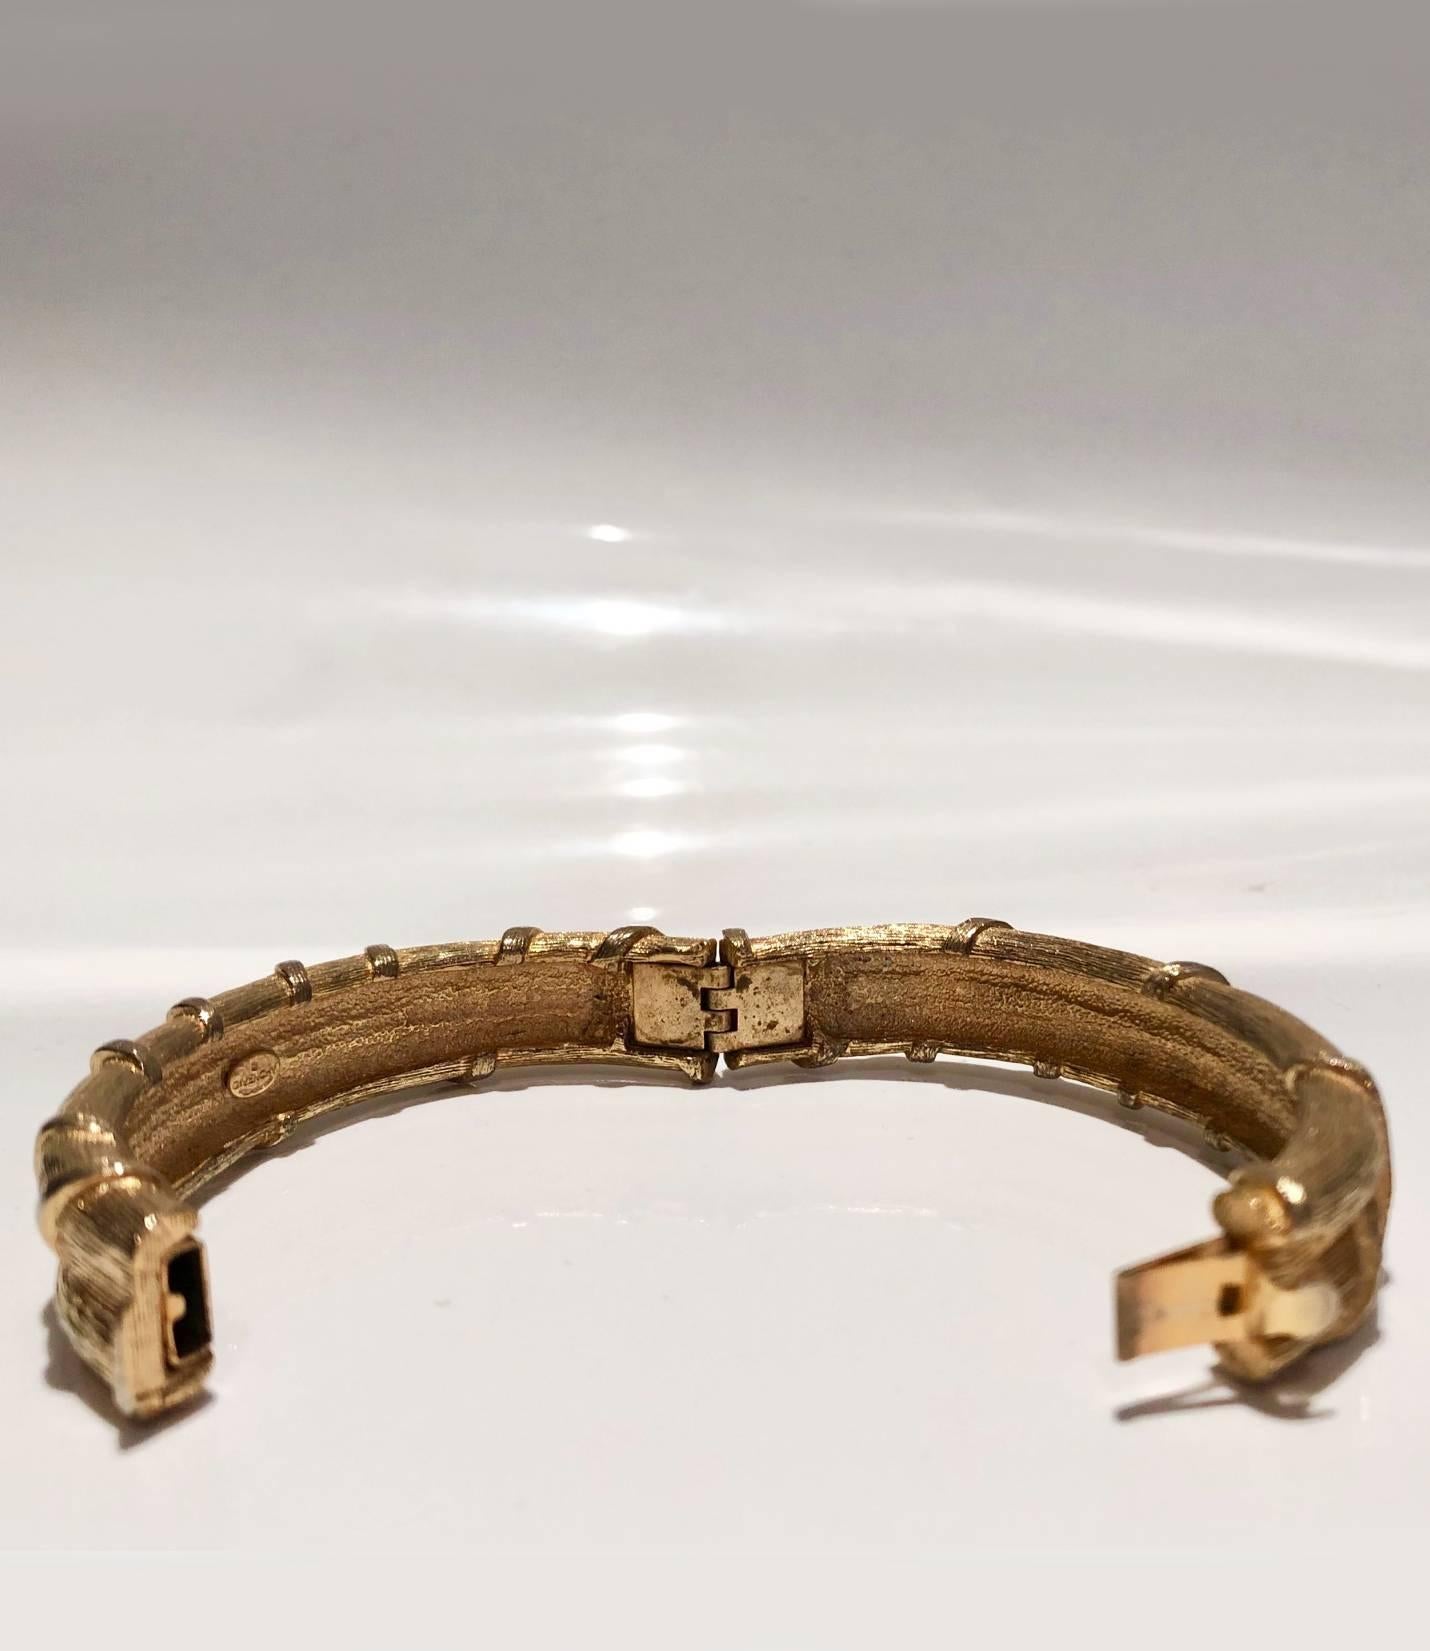 slave key jewelry 1970s